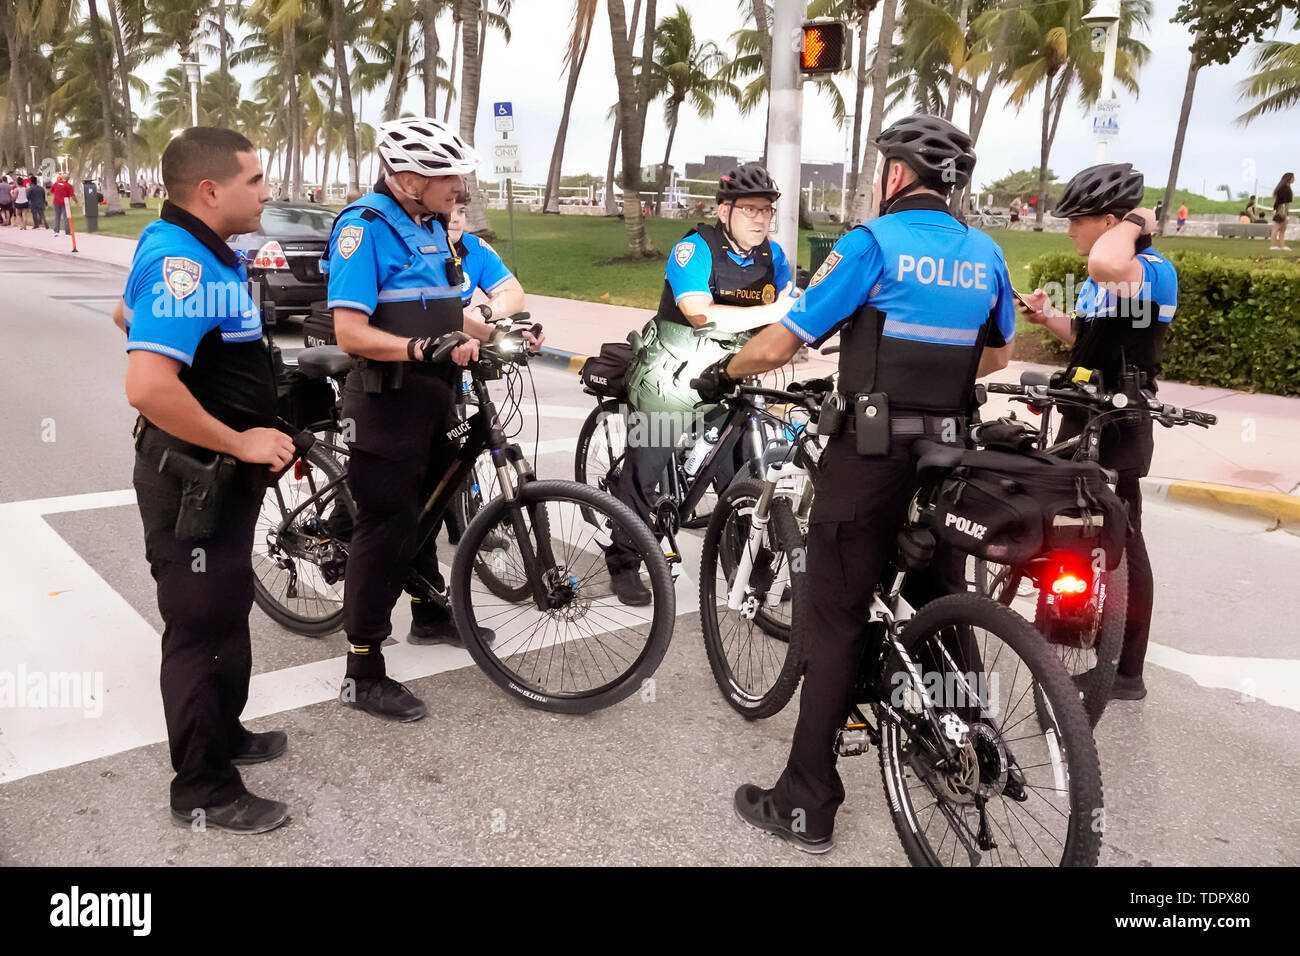 Miami Beach Florida, Ocean Drive, polizia pattuglia bicicletta, huddle, uomo uomini maschio, ufficiale, pubblica sicurezza, uniforme, ottenere ordini, pianificazione di strategia, FL190104036 Foto Stock